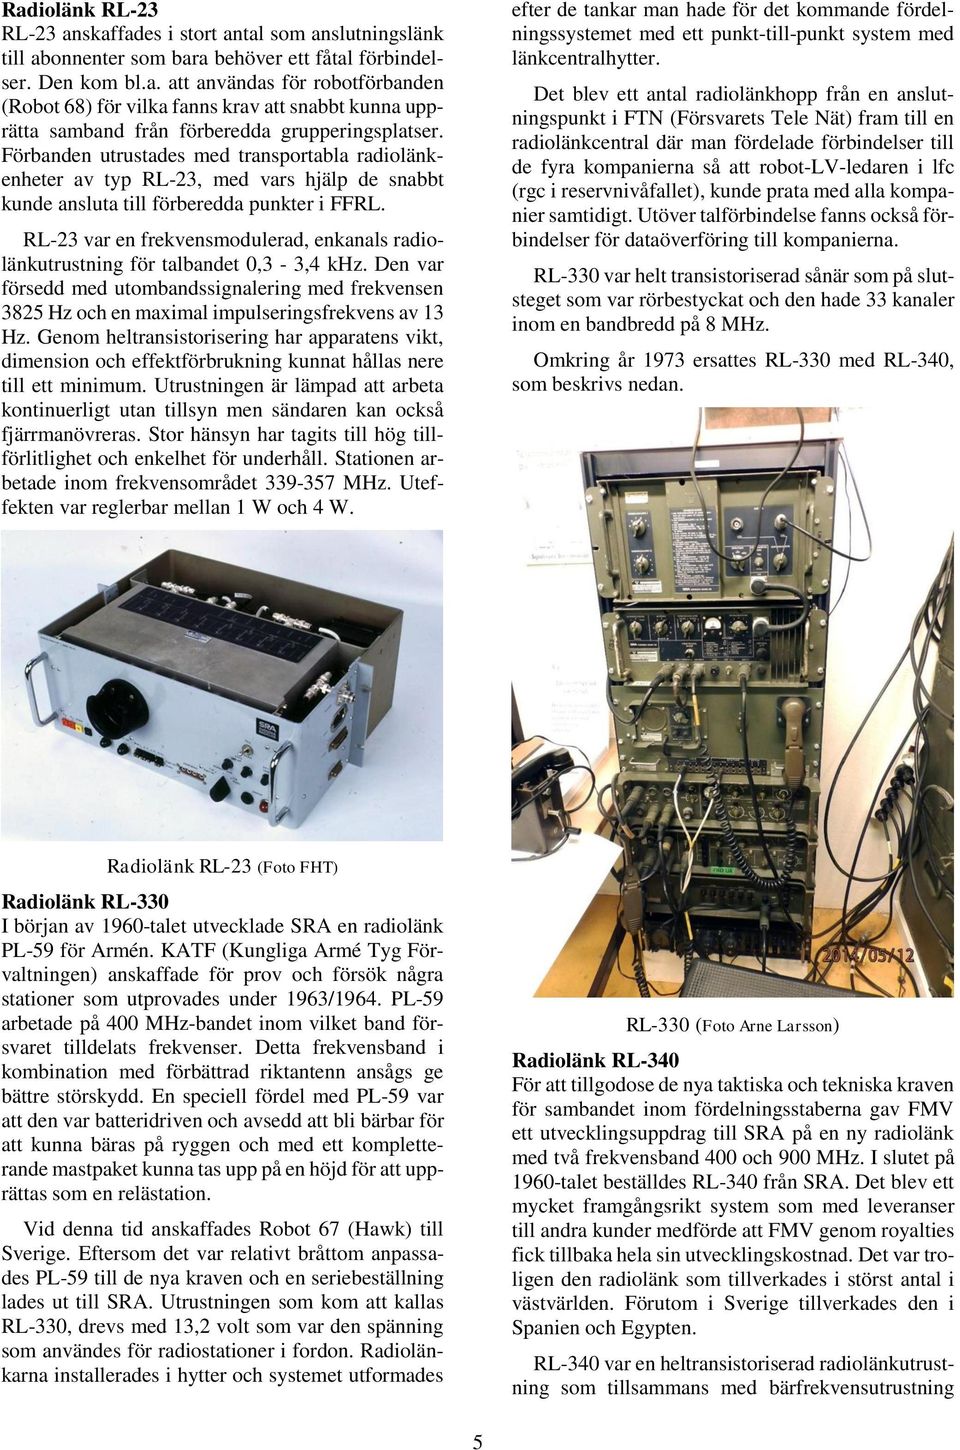 RL-23 var en frekvensmodulerad, enkanals radiolänkutrustning för talbandet 0,3-3,4 khz. Den var försedd med utombandssignalering med frekvensen 3825 Hz och en maximal impulseringsfrekvens av 13 Hz.